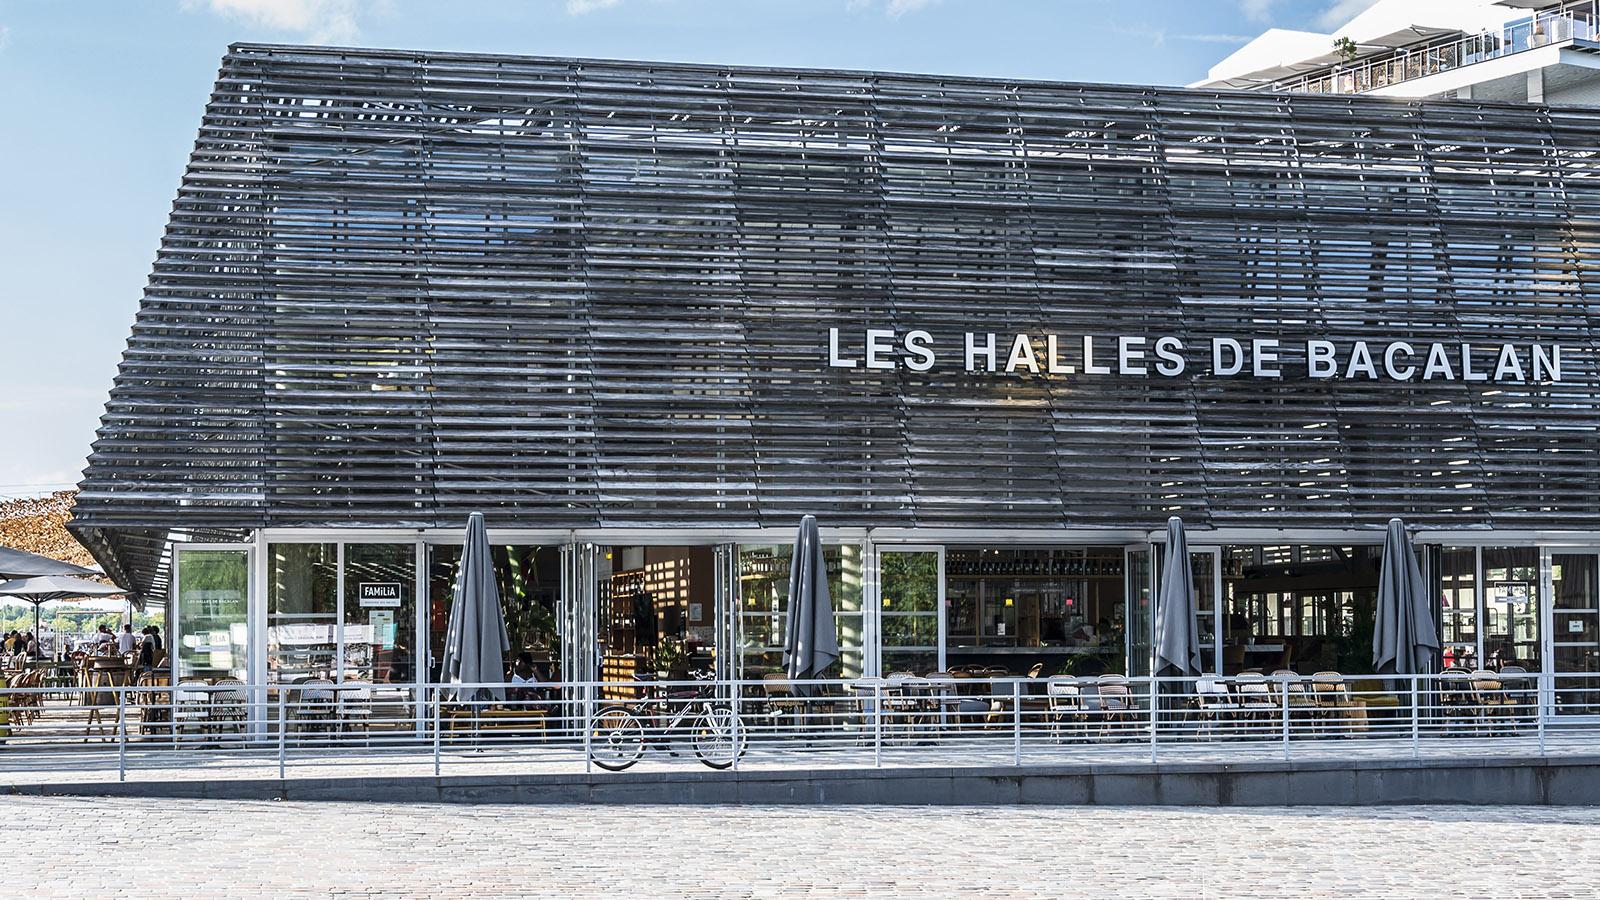 Moderne food hall voon Bordeaux: die Halles de Bacalan. Foto: Hilke Maunder